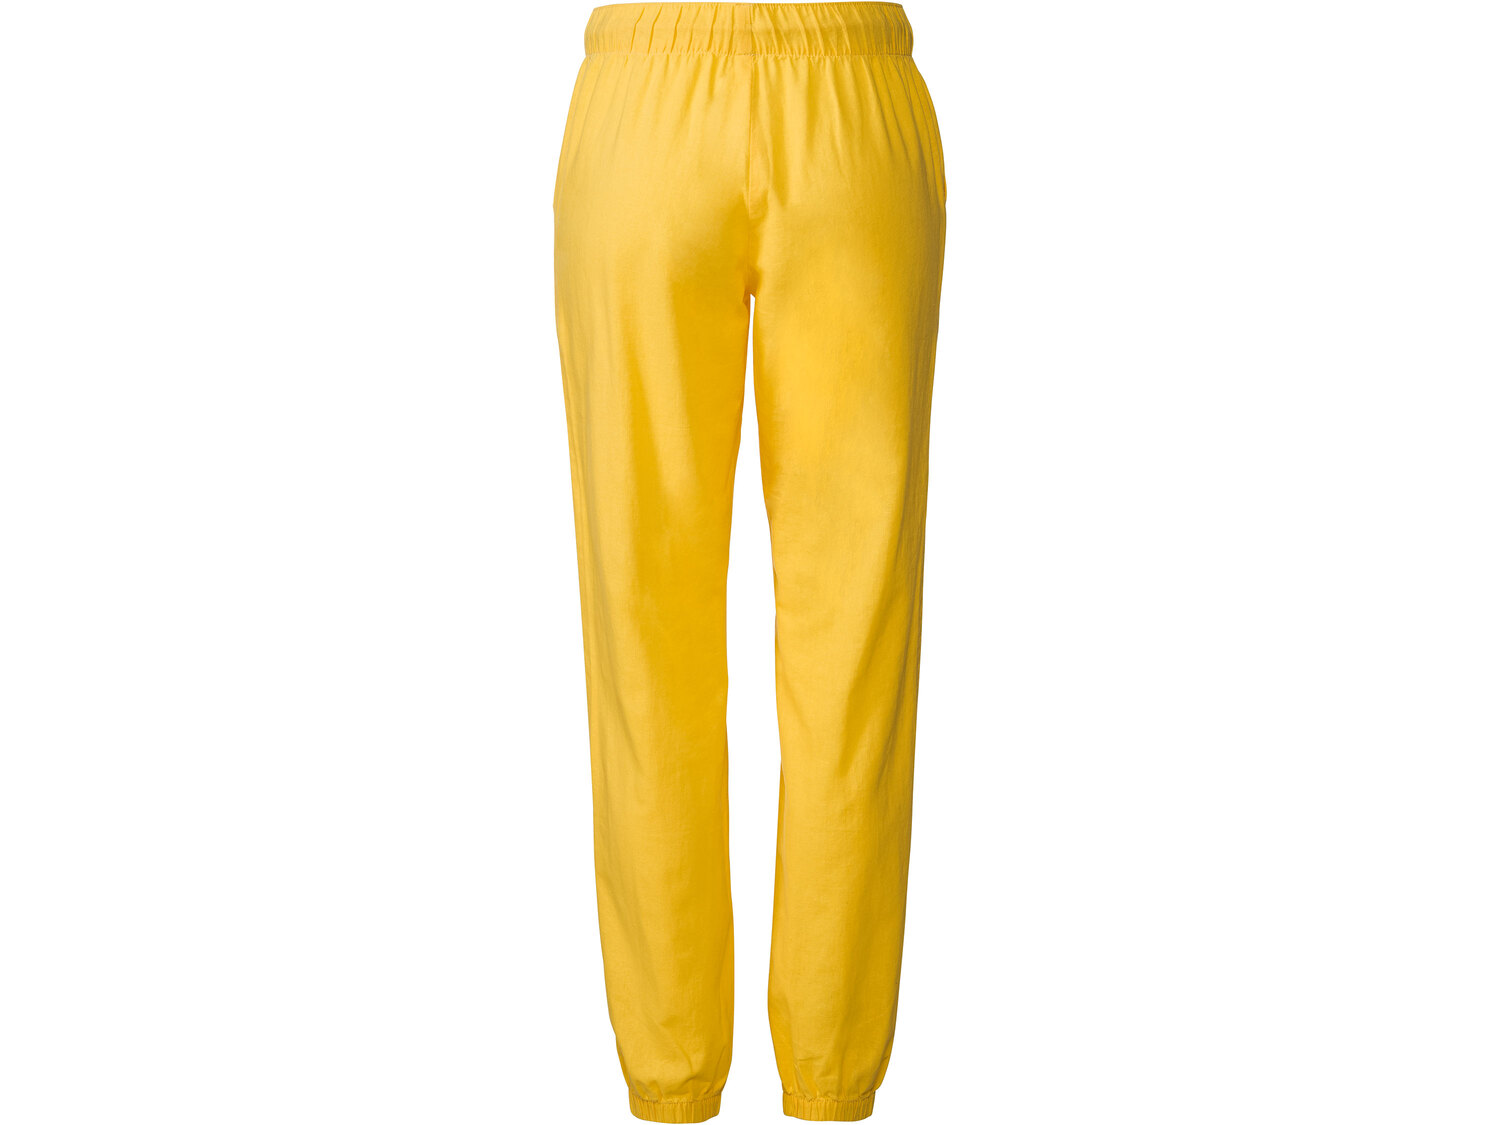 Spodnie damskie z lnem Esmara, cena 44,99 PLN 
- 55% lnu, 45% bawełny
- rozmiary: ...